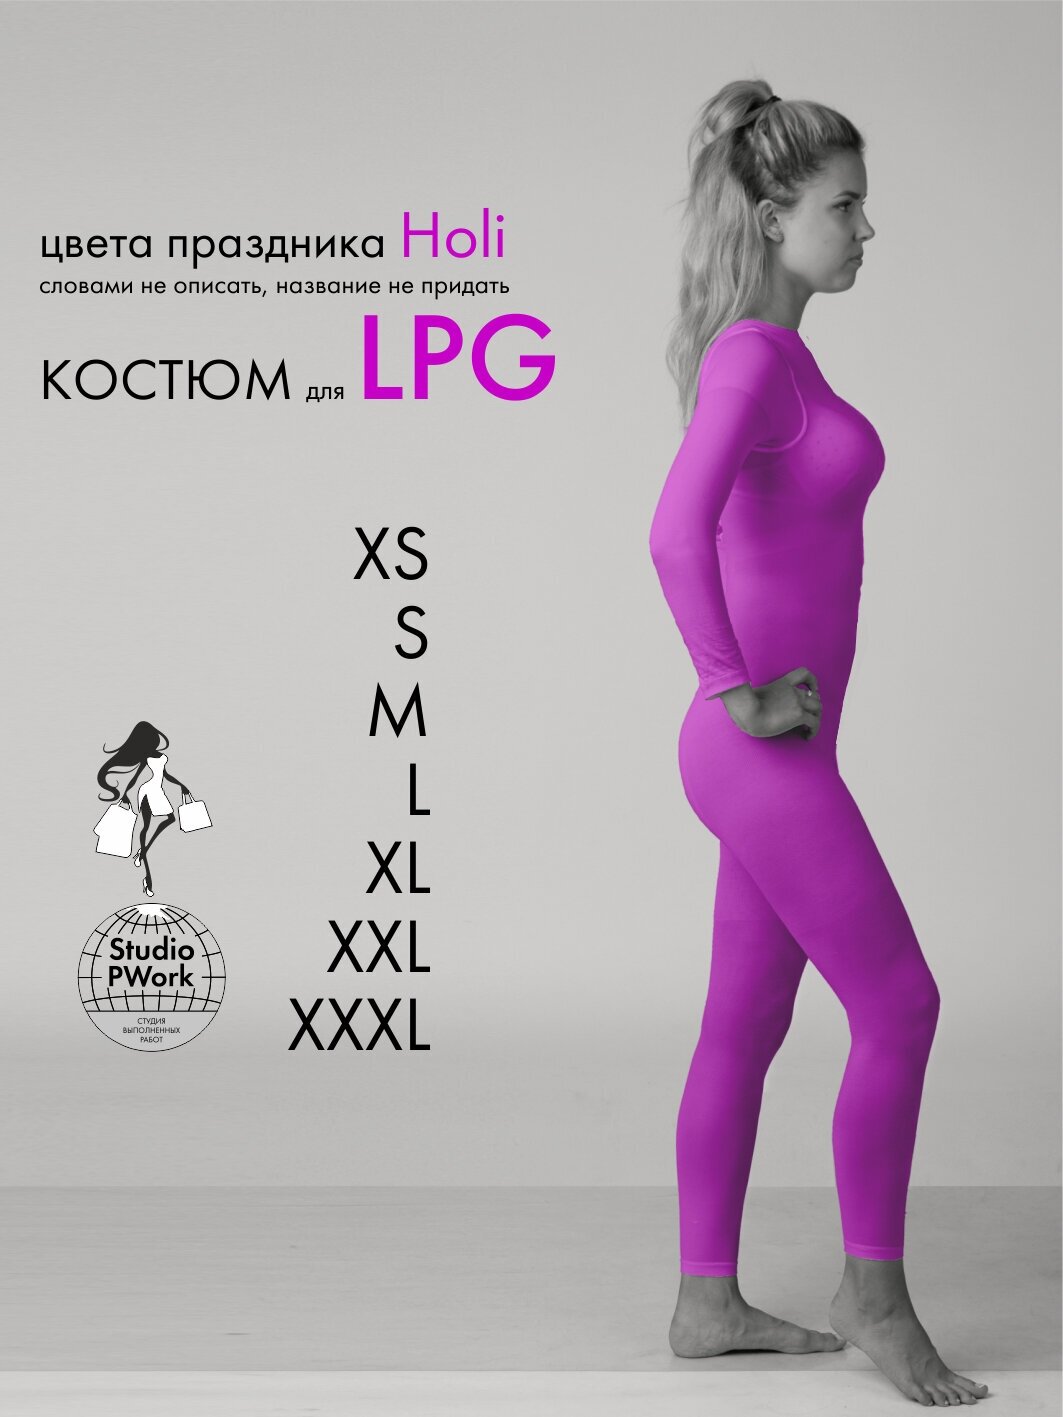 Набор: LPG костюм для LPG массажа, фиолетовый, размер M, 46-48, 120 den LPG комбинезон лпж костюм